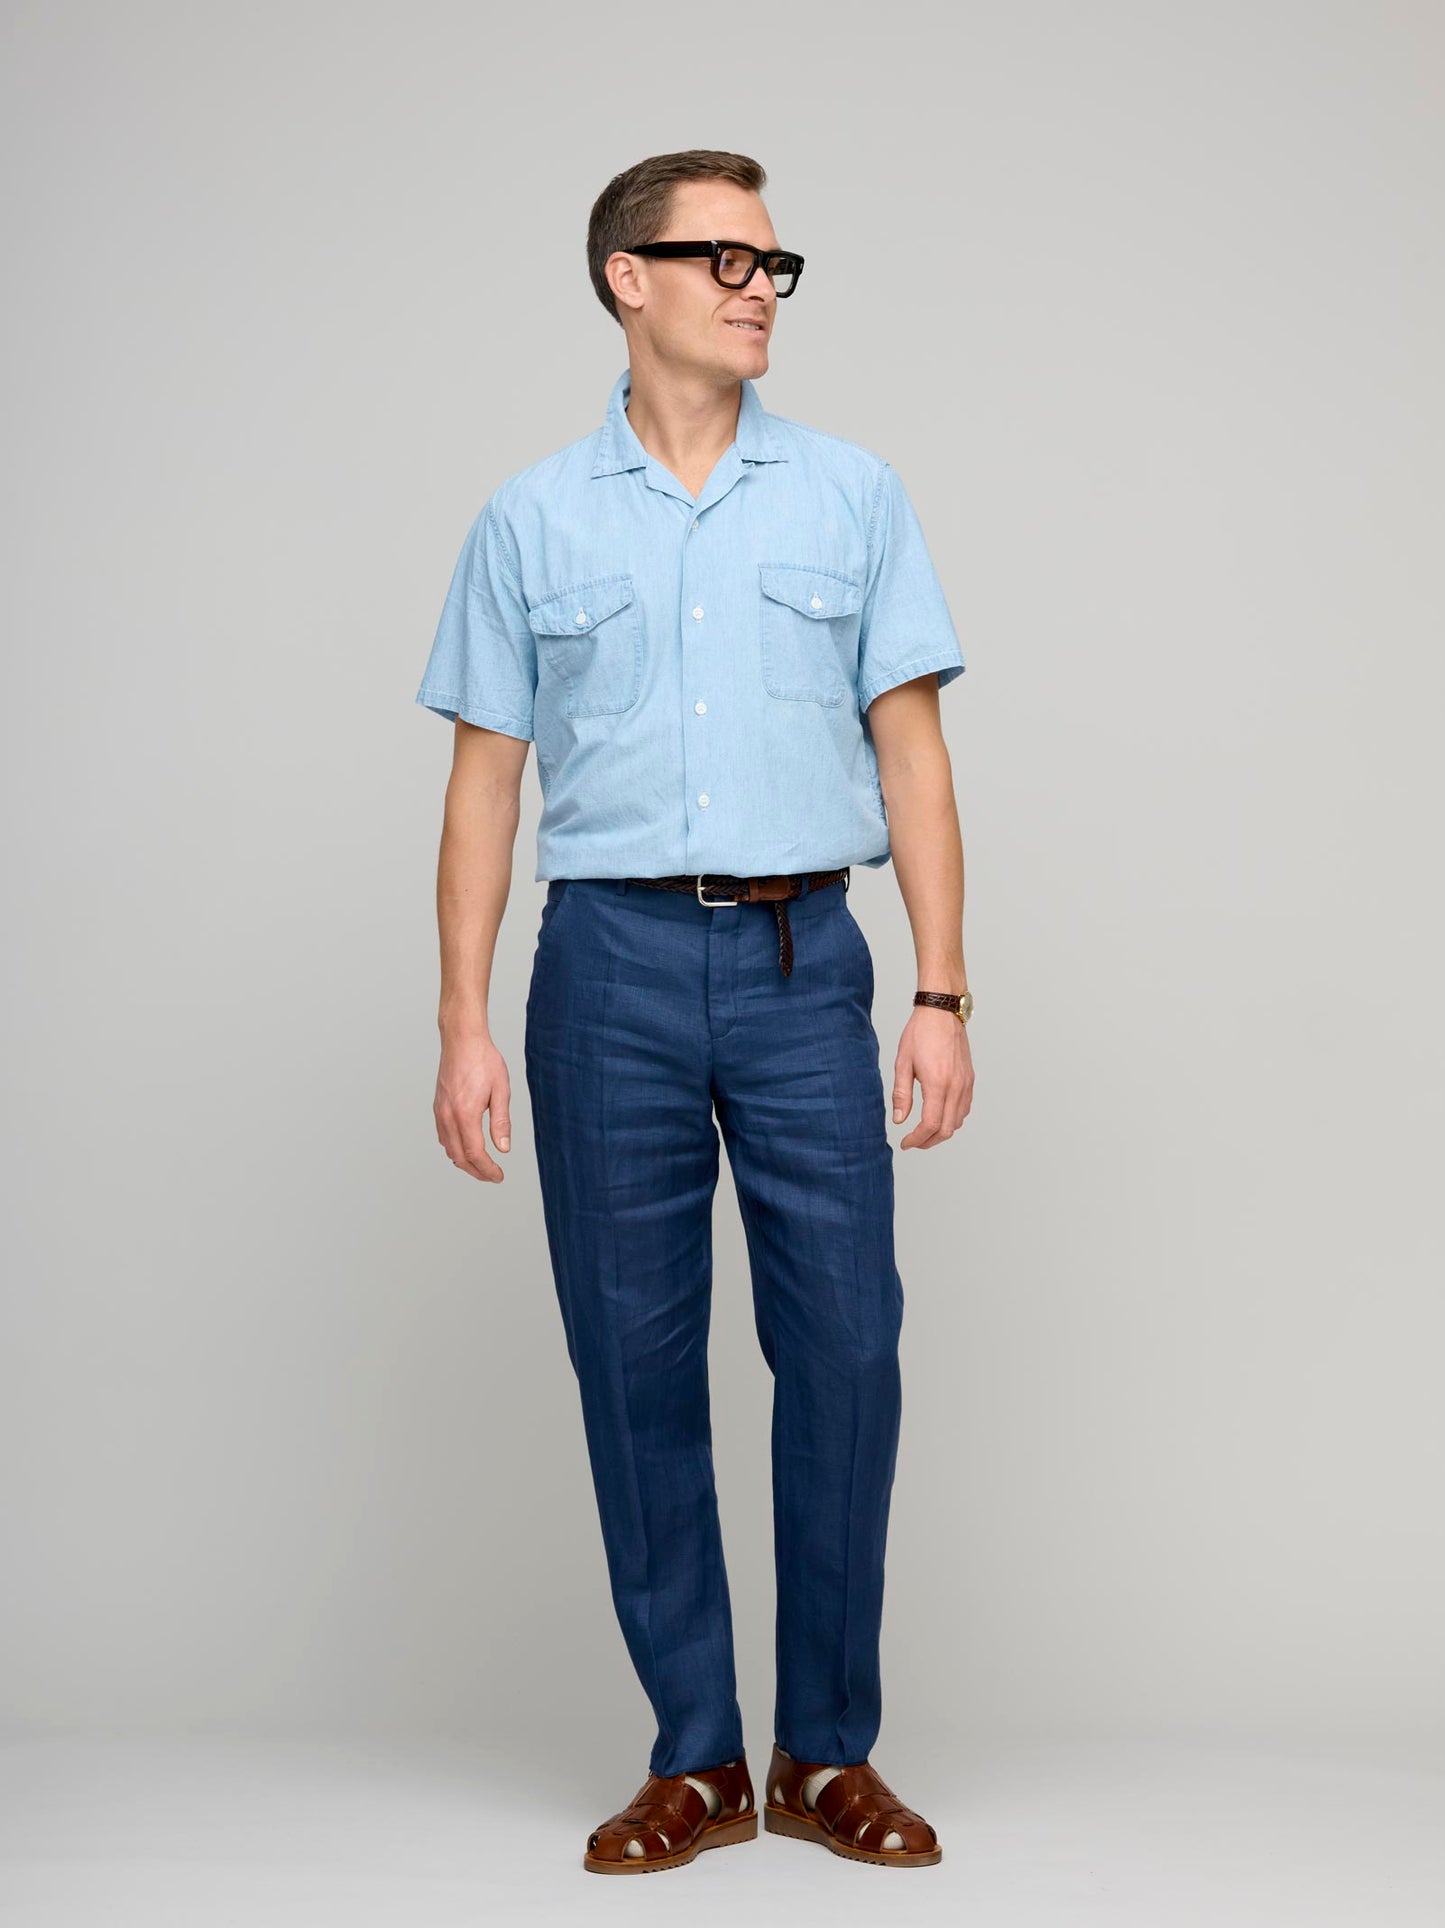 Wide Model 8 Linen Trousers, Blue